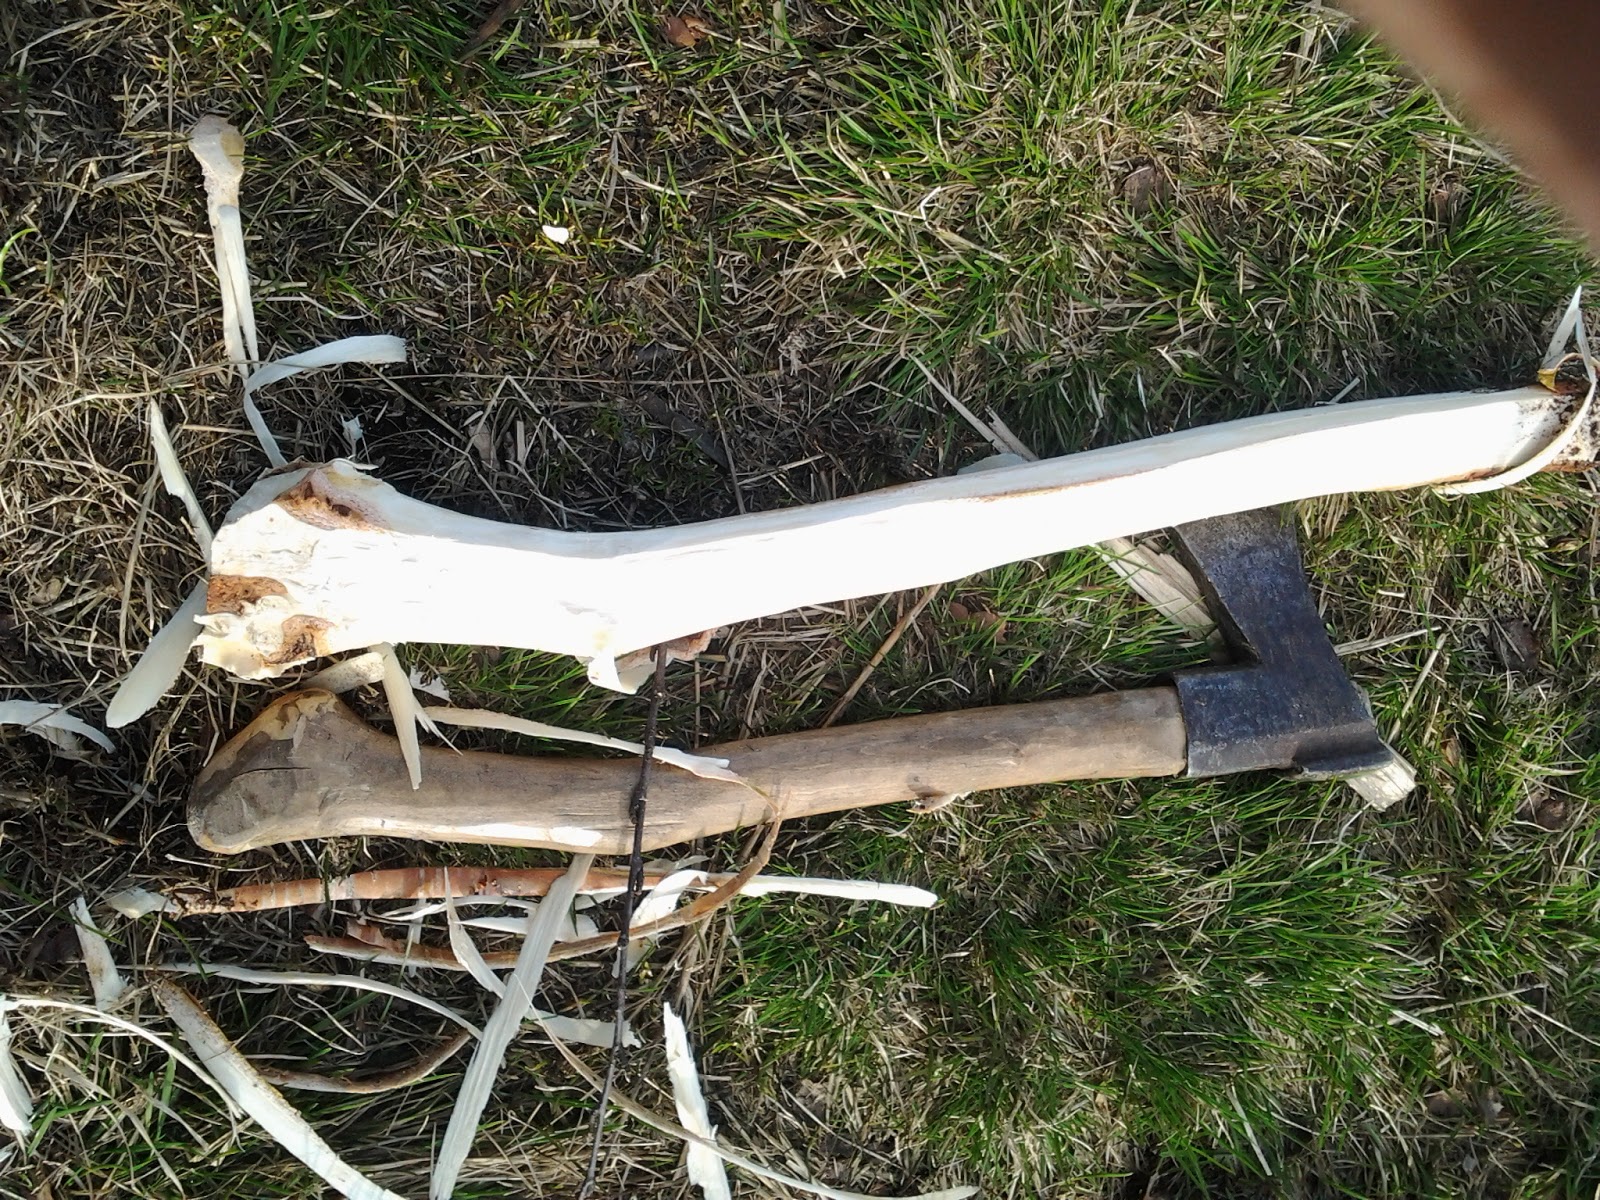 axe handle wood